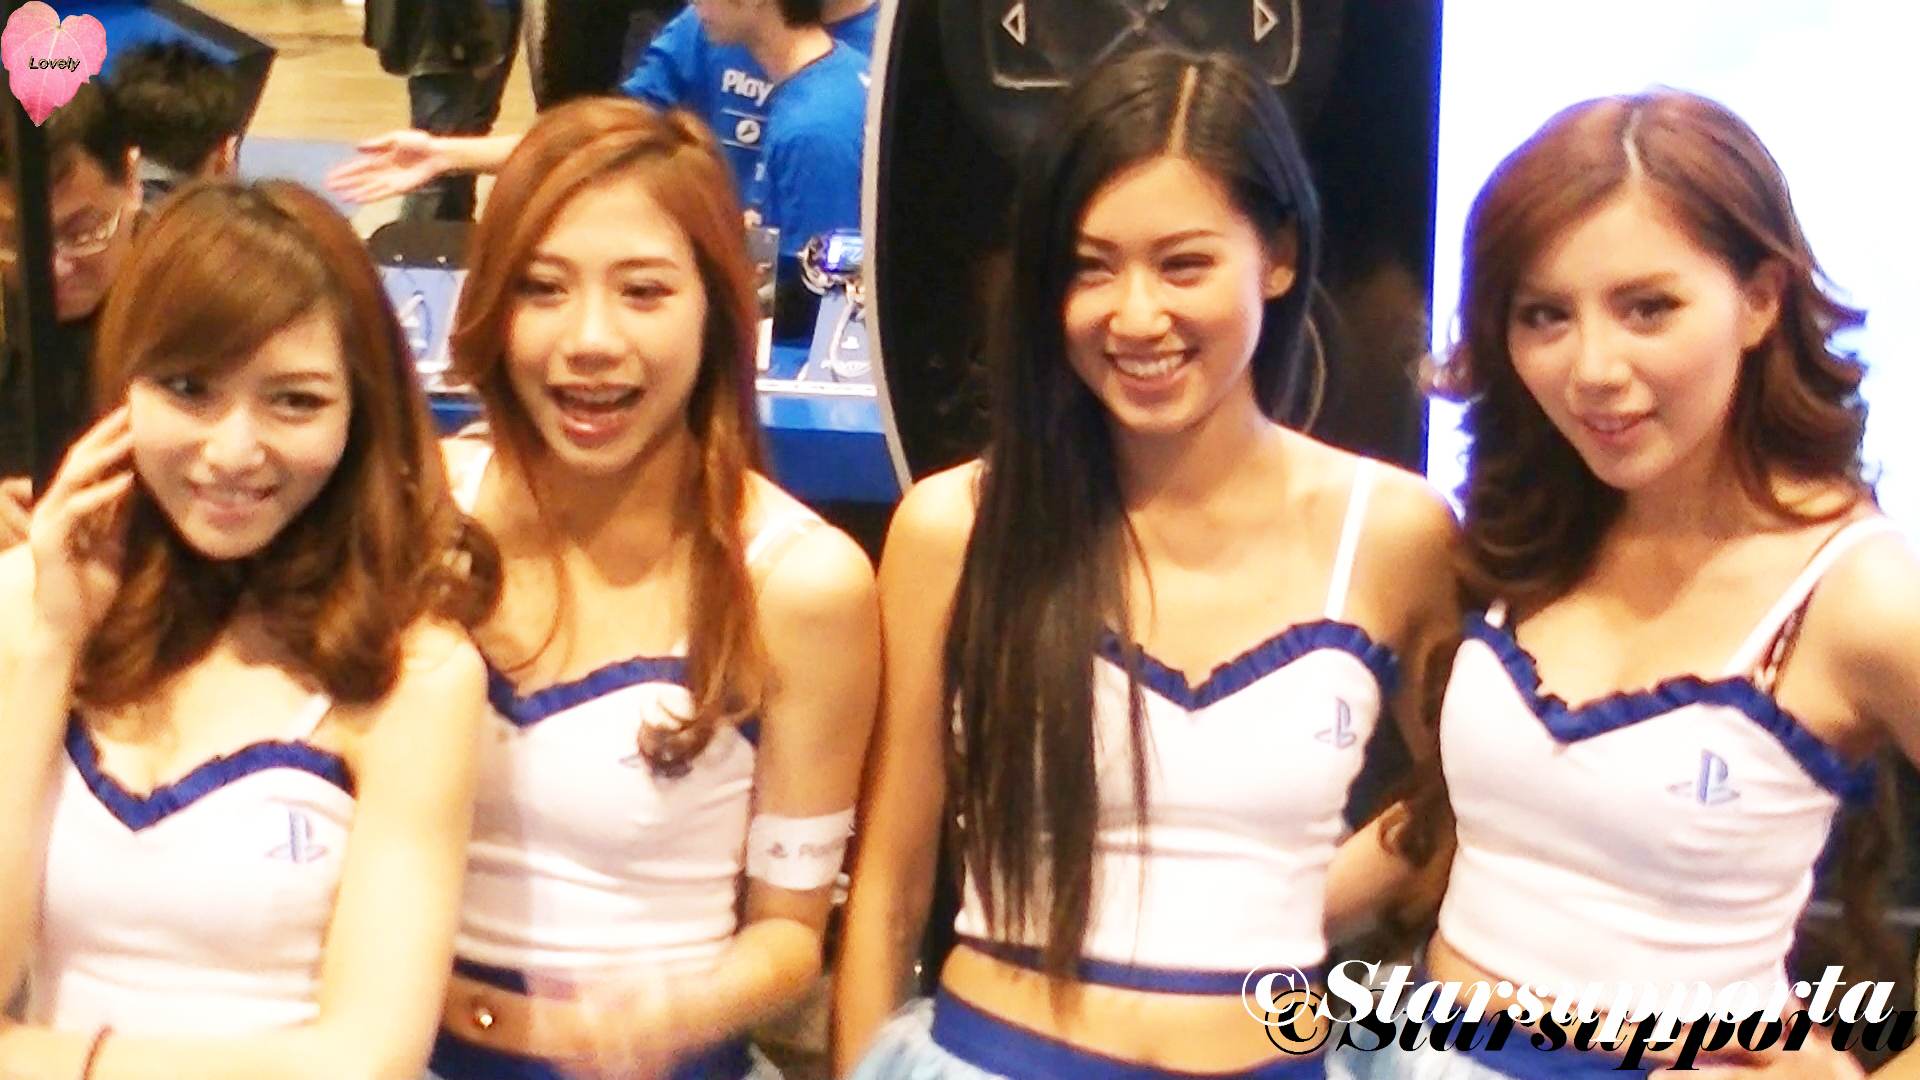 20121223 亞洲遊戲展 Asia Game Show - SONY PlayStation Girls @ 香港會議展覽中心 HKCEC